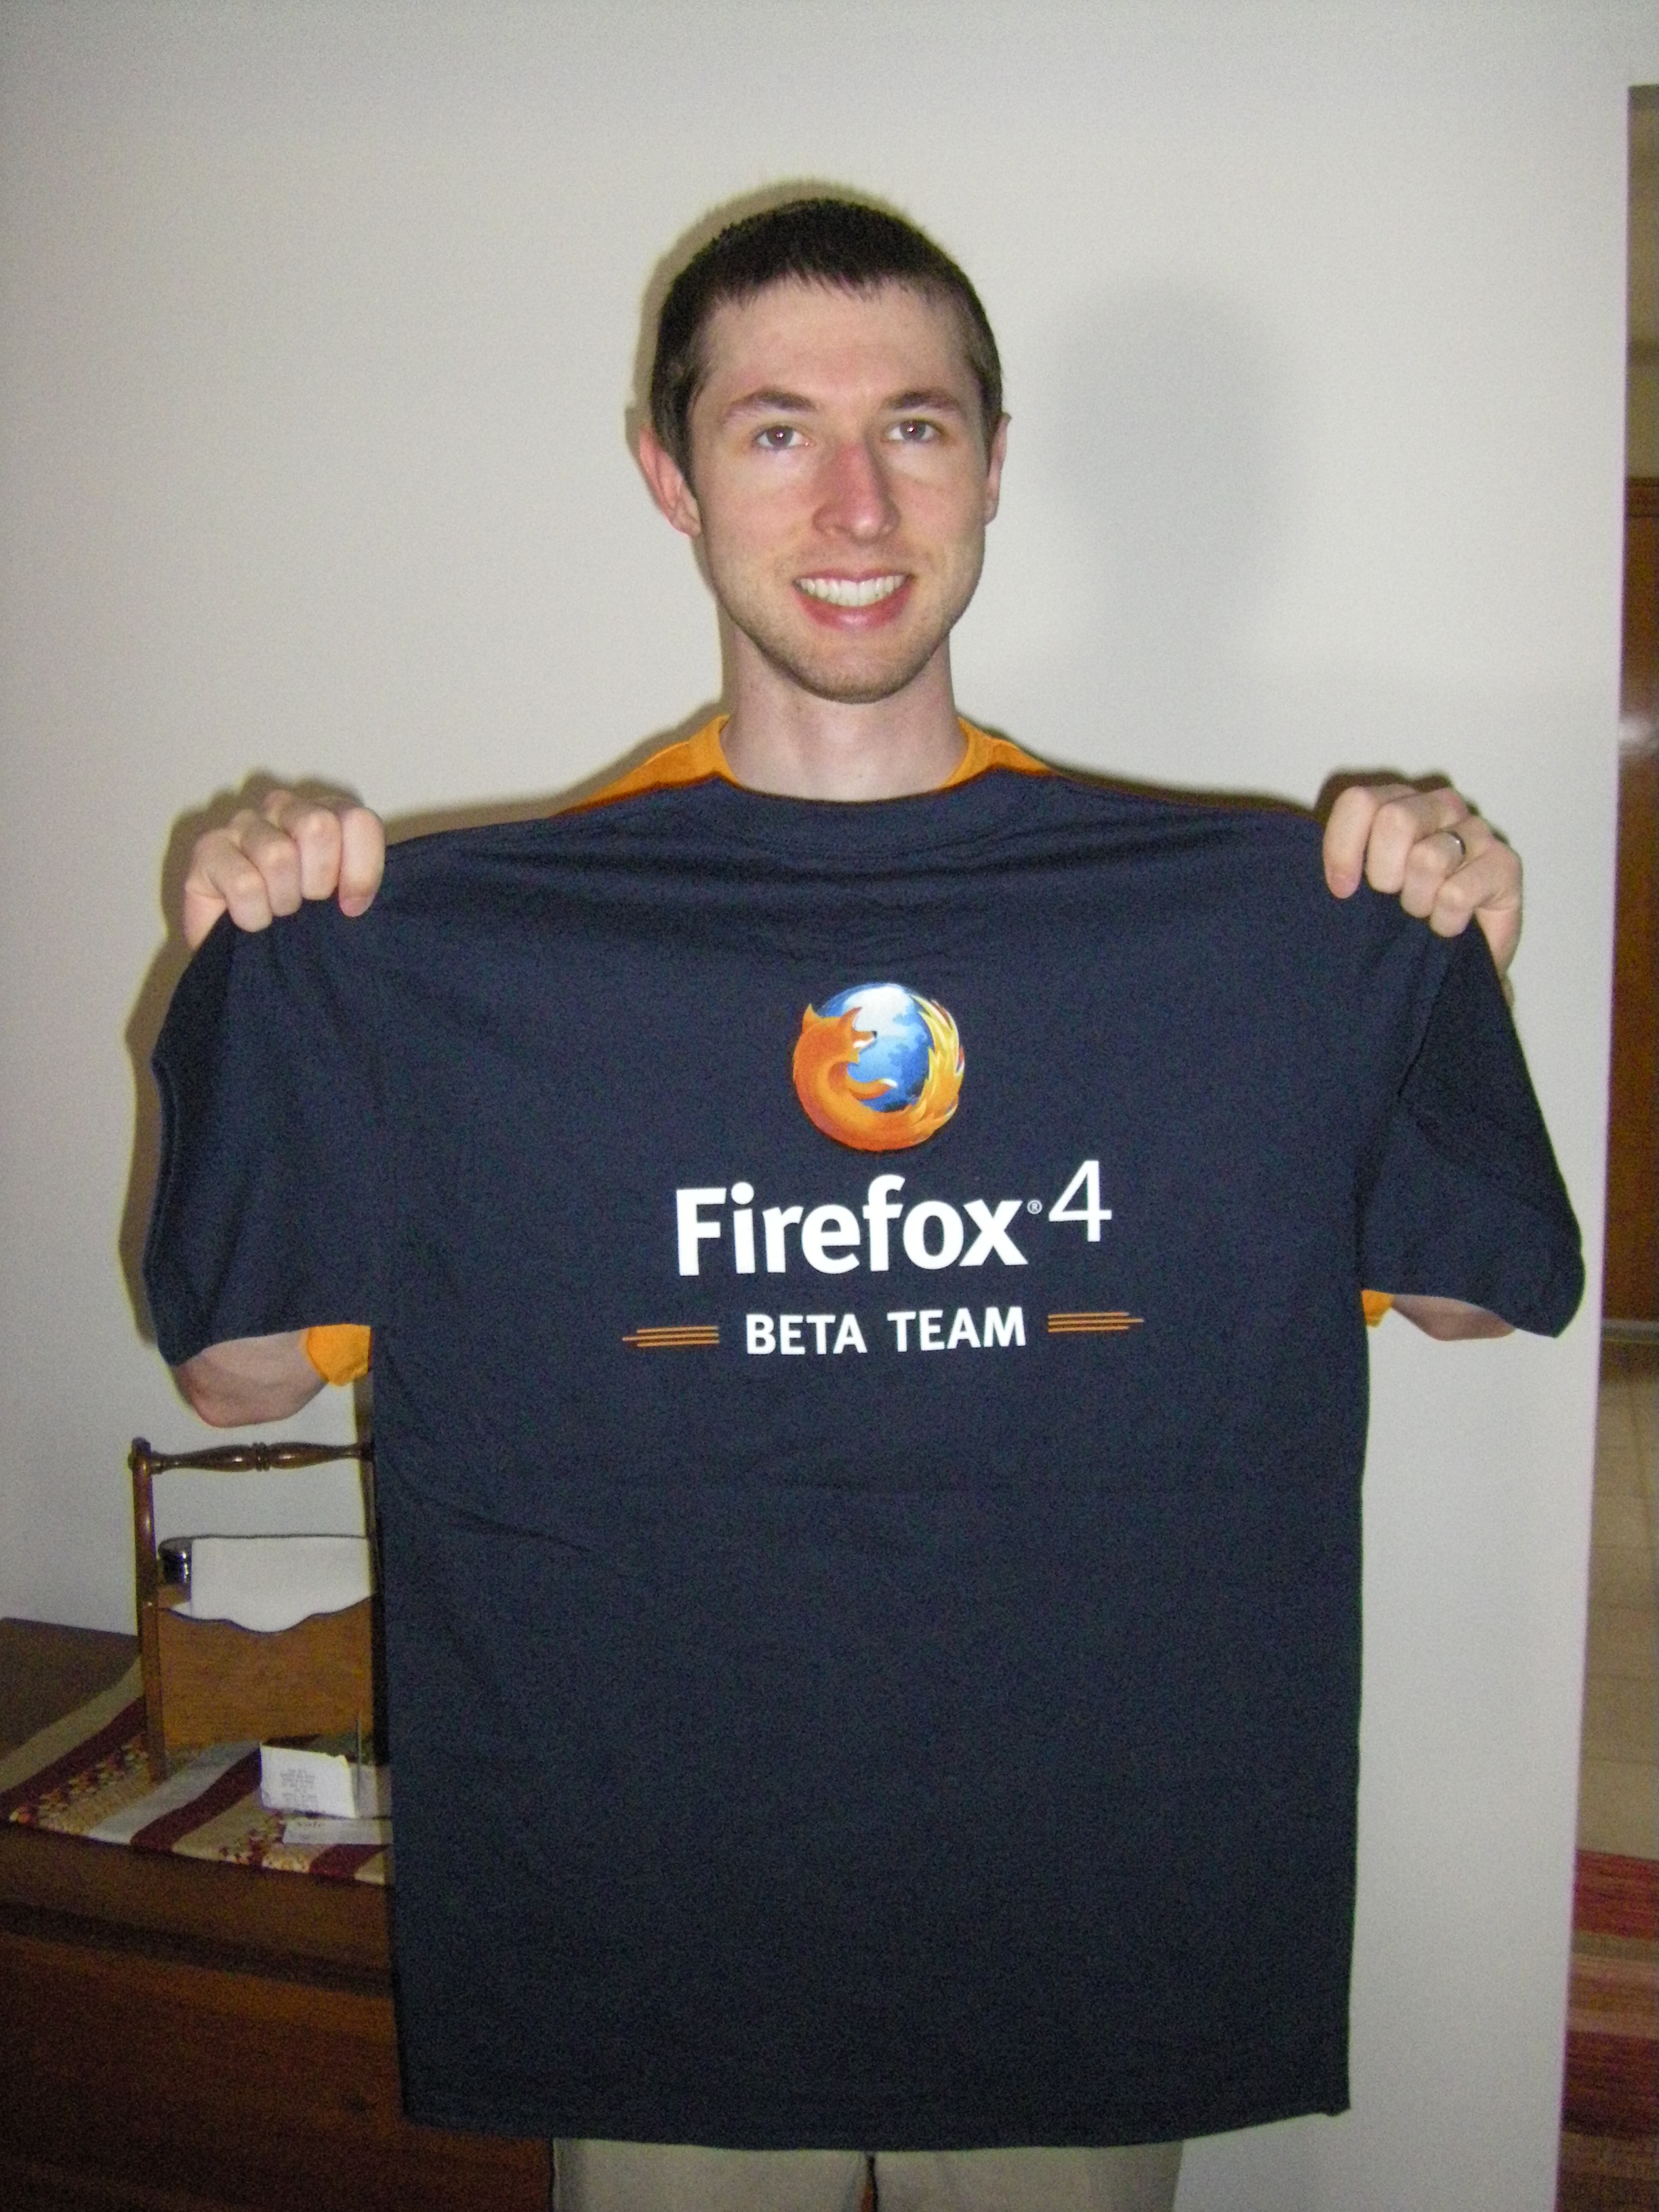 Firefox 4 Beta Team T-shirt